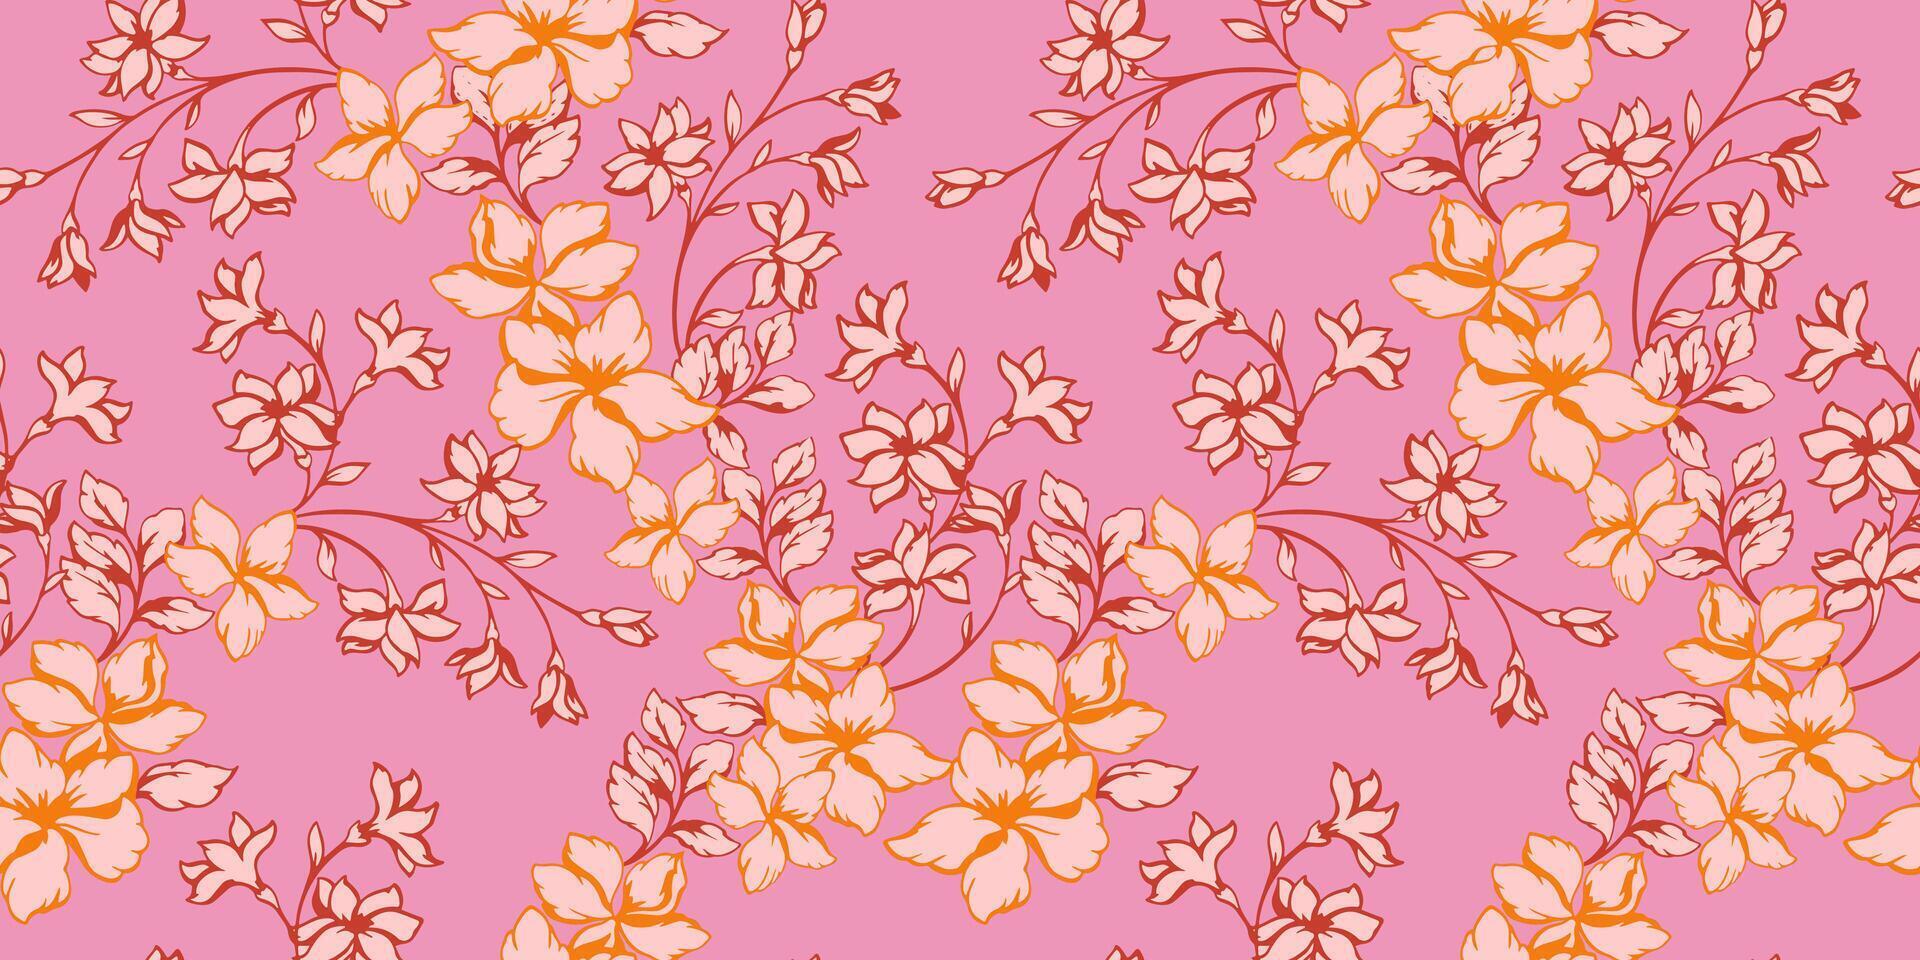 bloeiend abstract artistiek takken wild bloemen naadloos patroon. hand- getrokken. monotoon roze gestileerde bloemen stengels achtergrond. collage sjabloon voor afdrukken, patroon, textiel, kleding stof vector